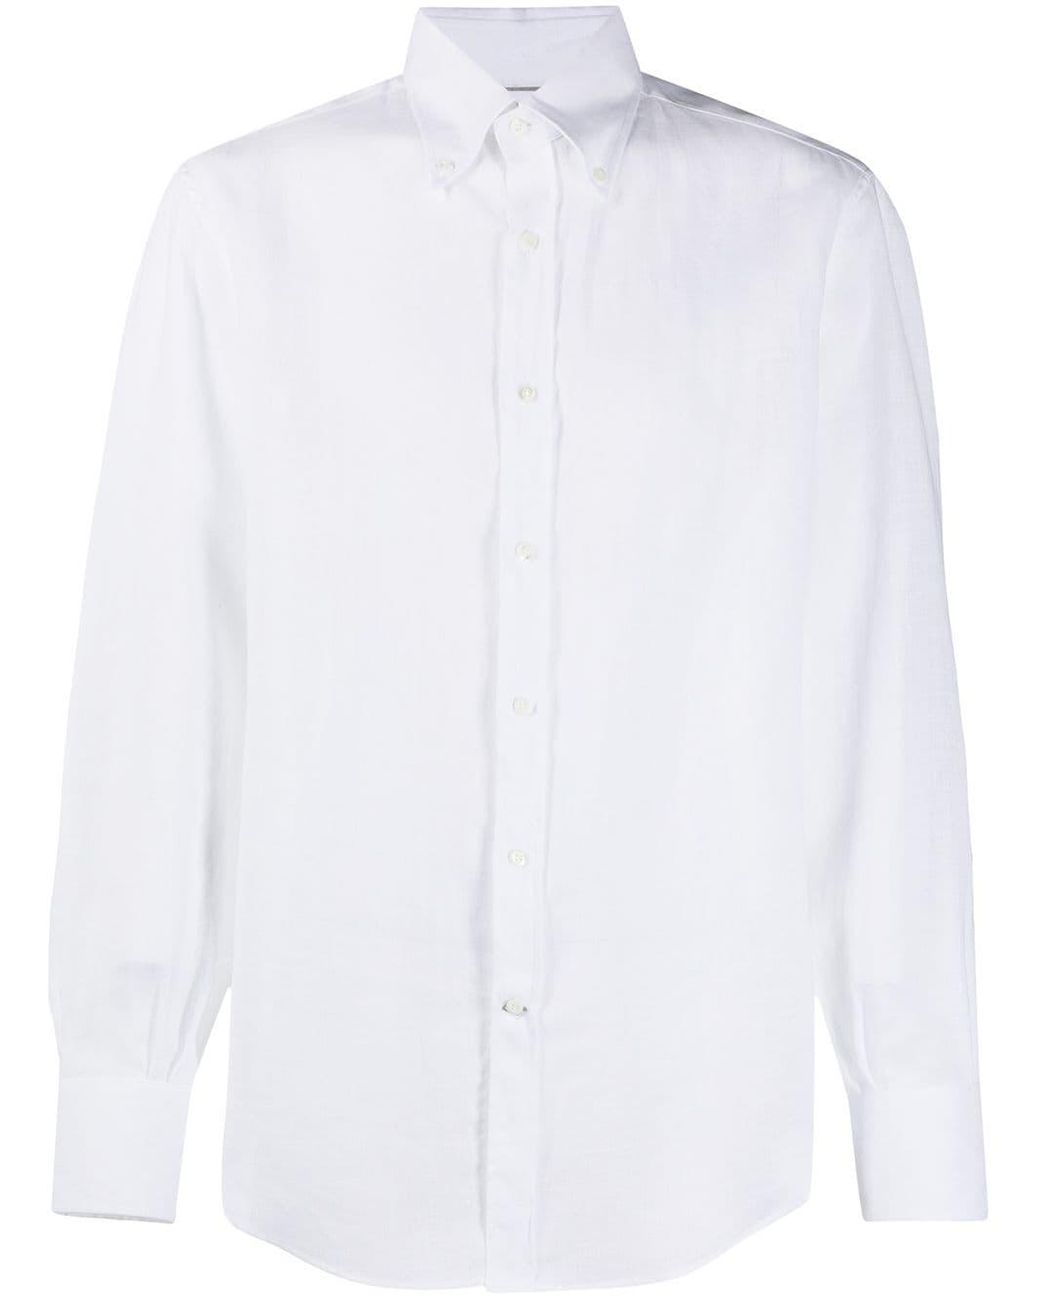 Brunello Cucinelli Button-down Shirt in White for Men - Lyst